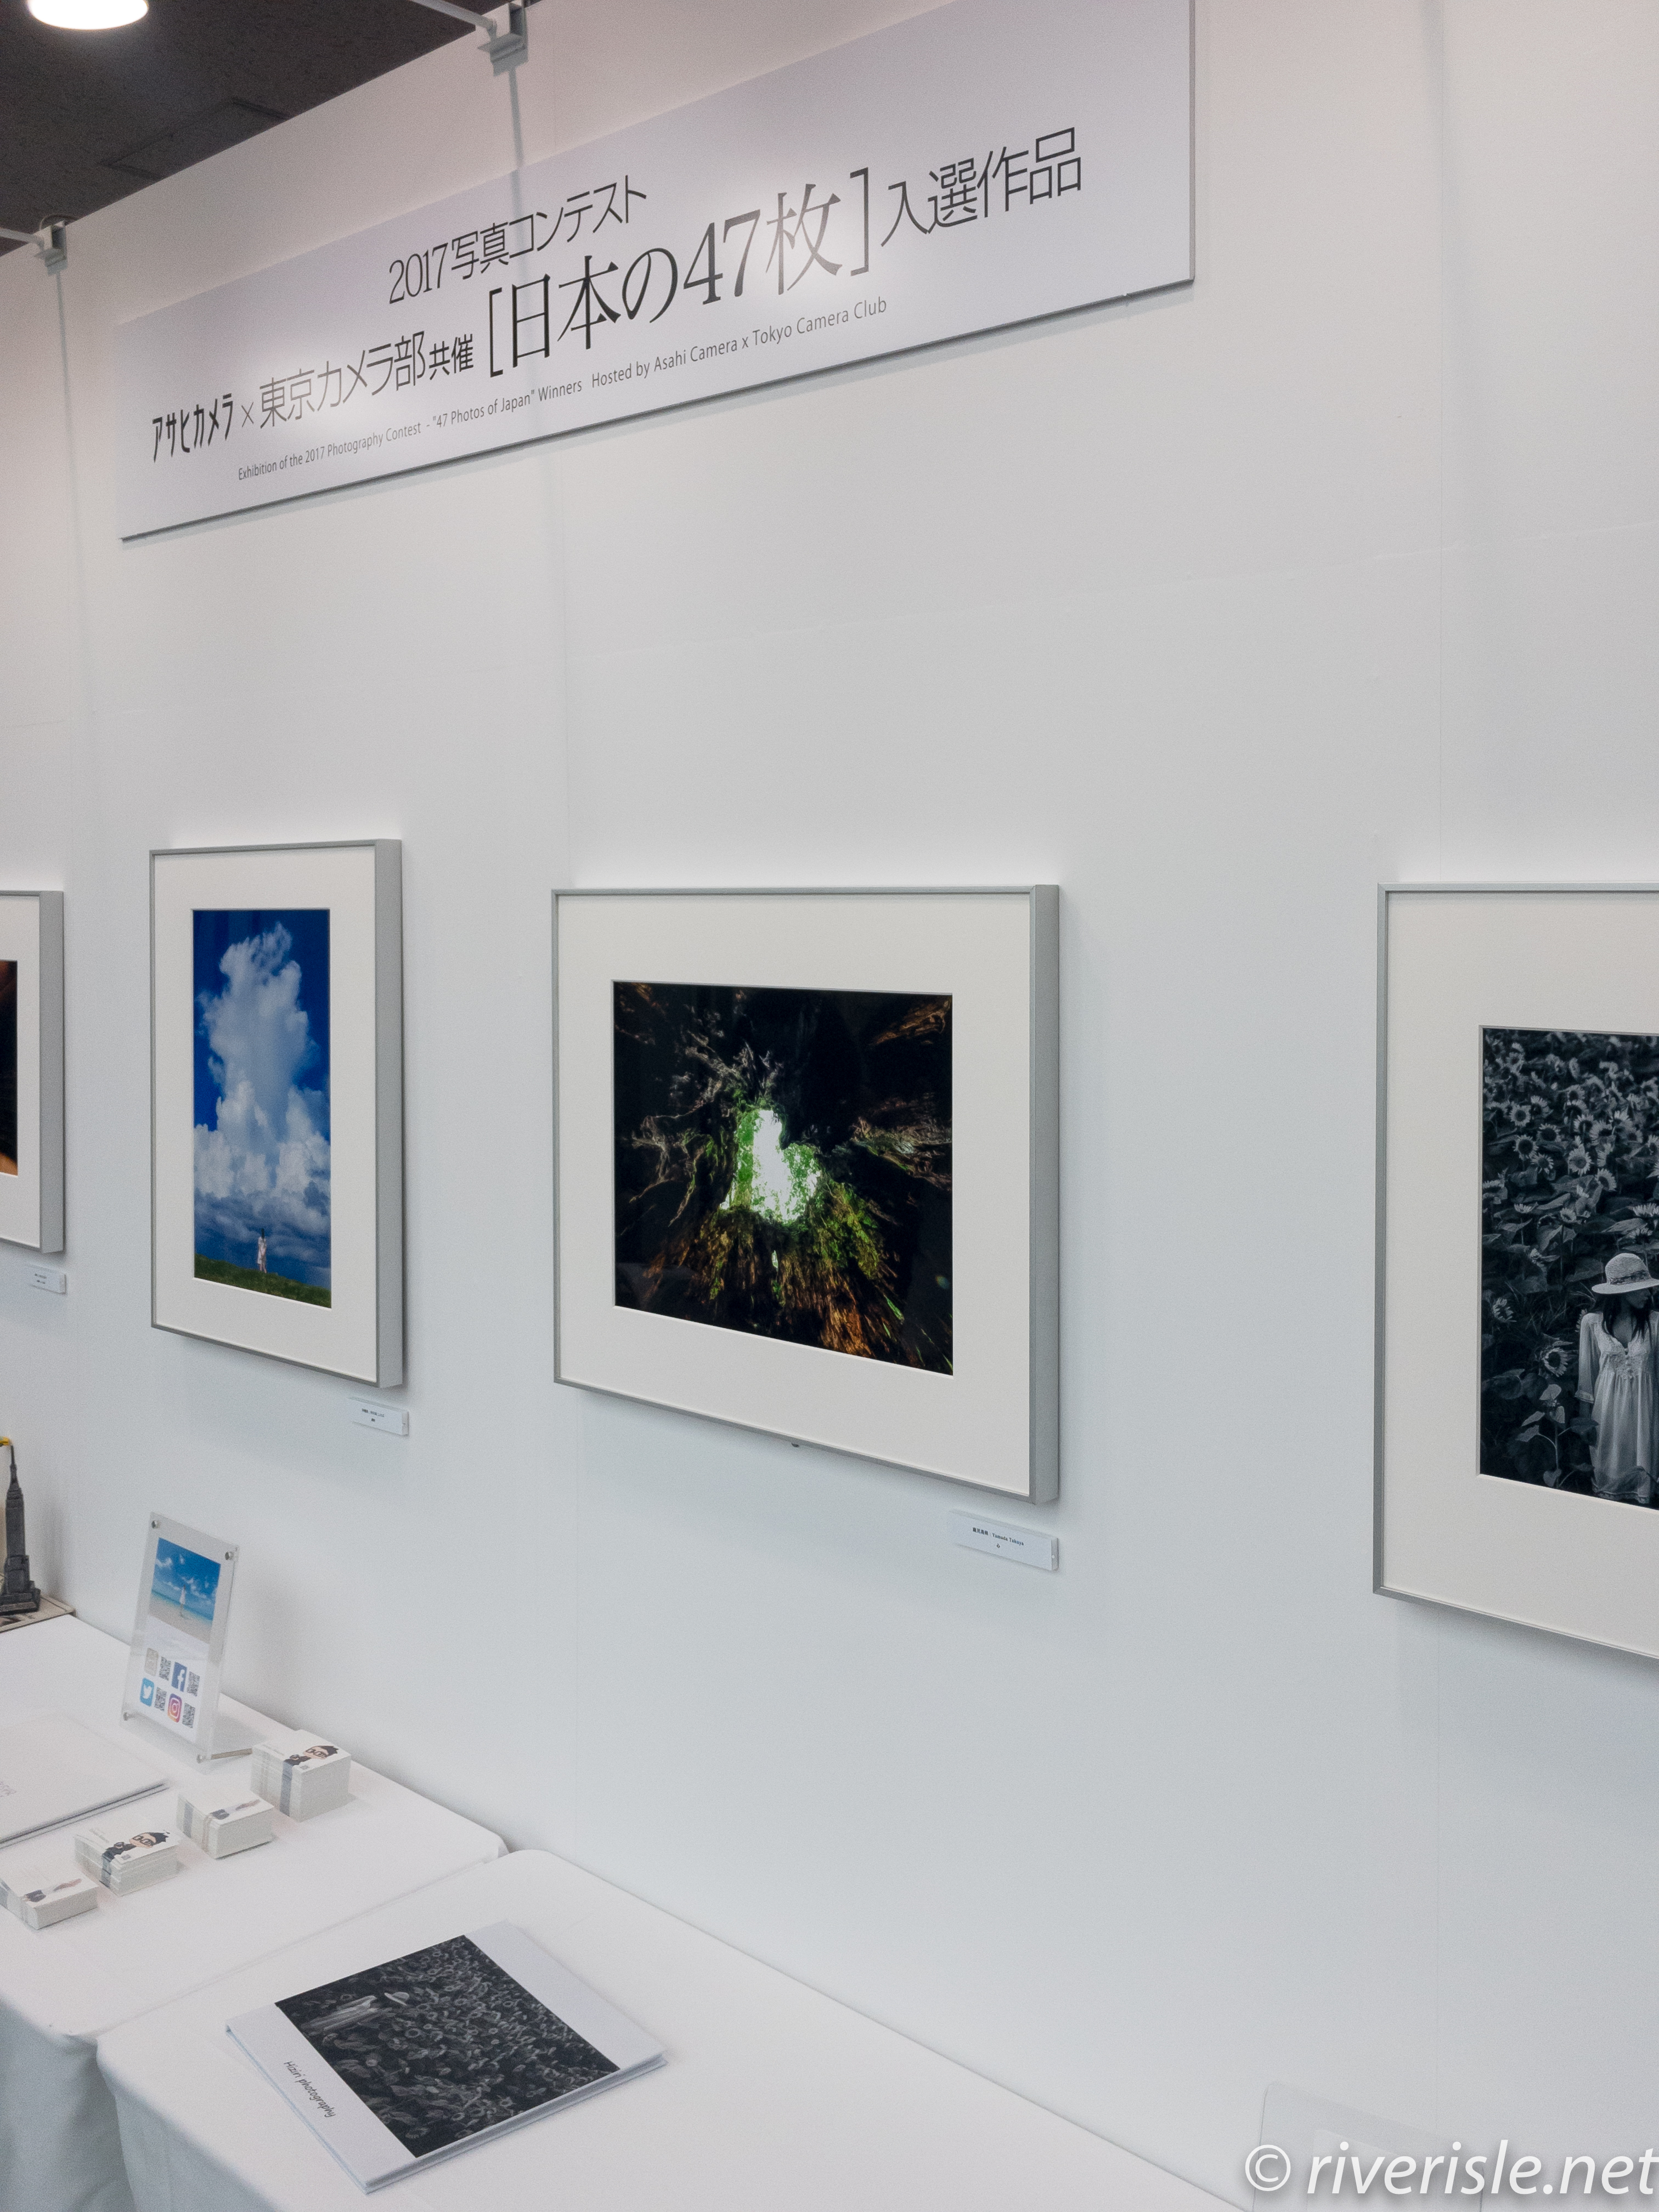 東京カメラ部2017写真展の日本の47枚部門の展示